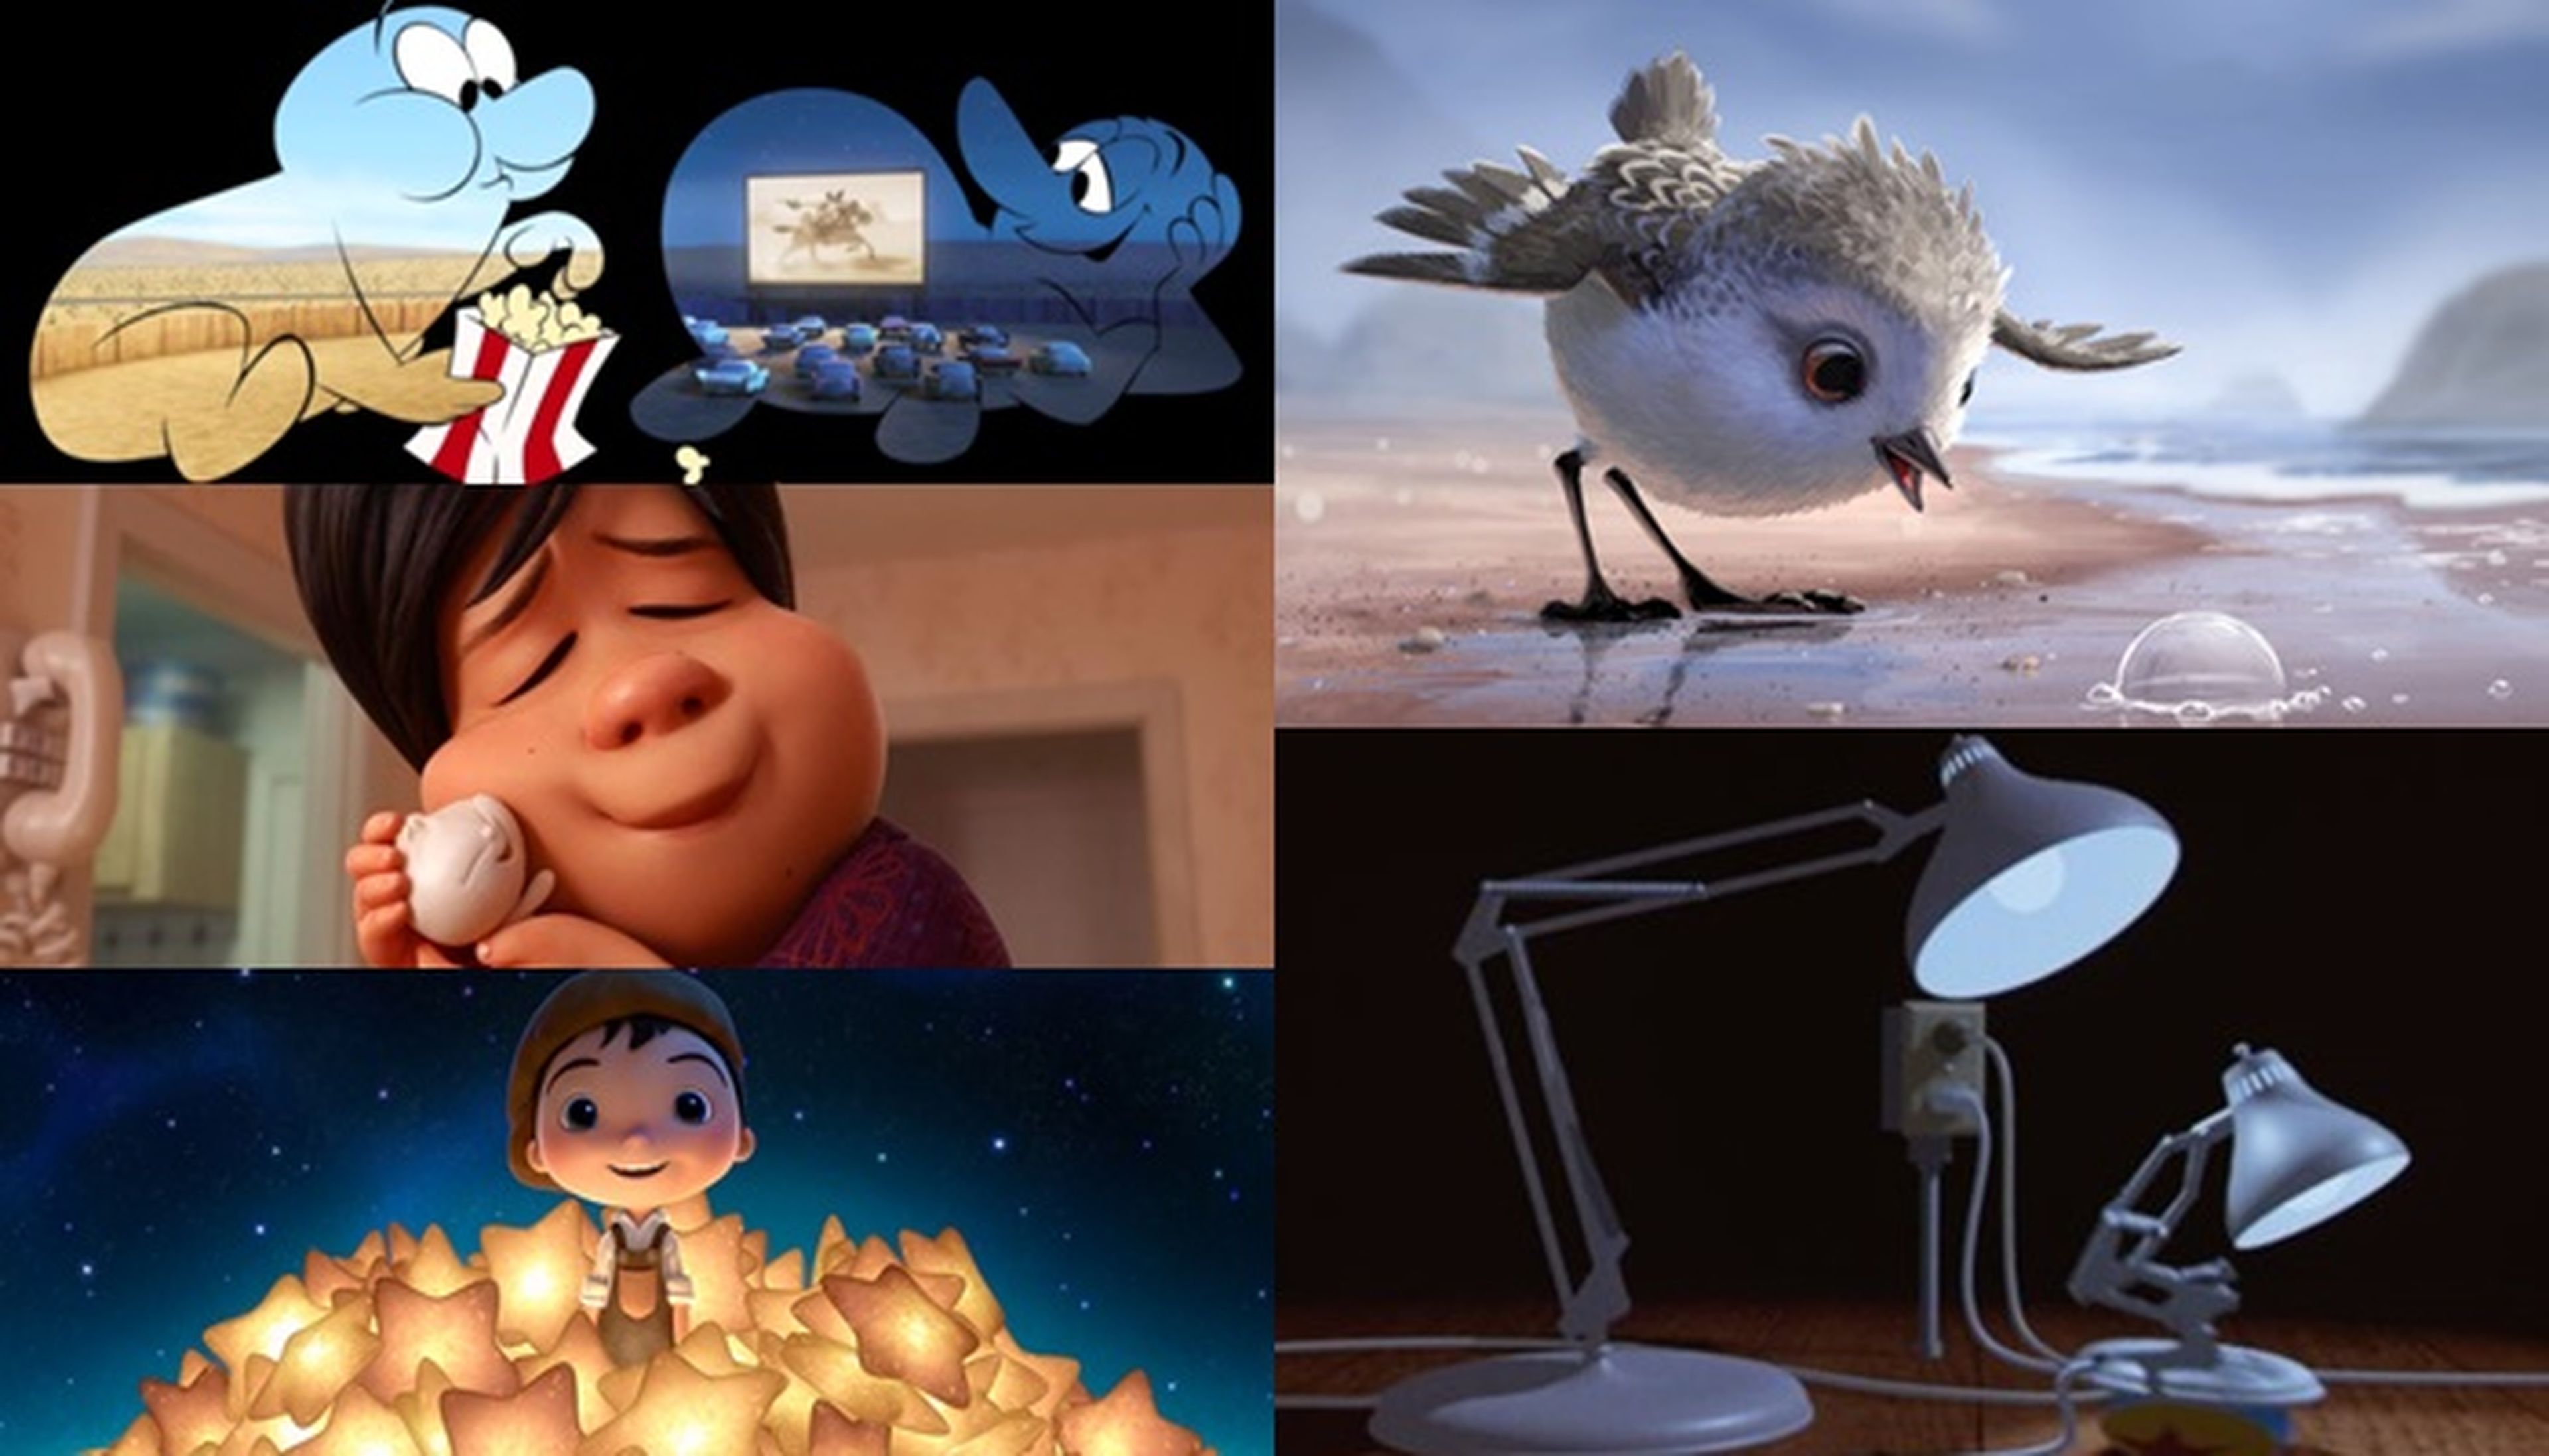 Cortos de Pixar